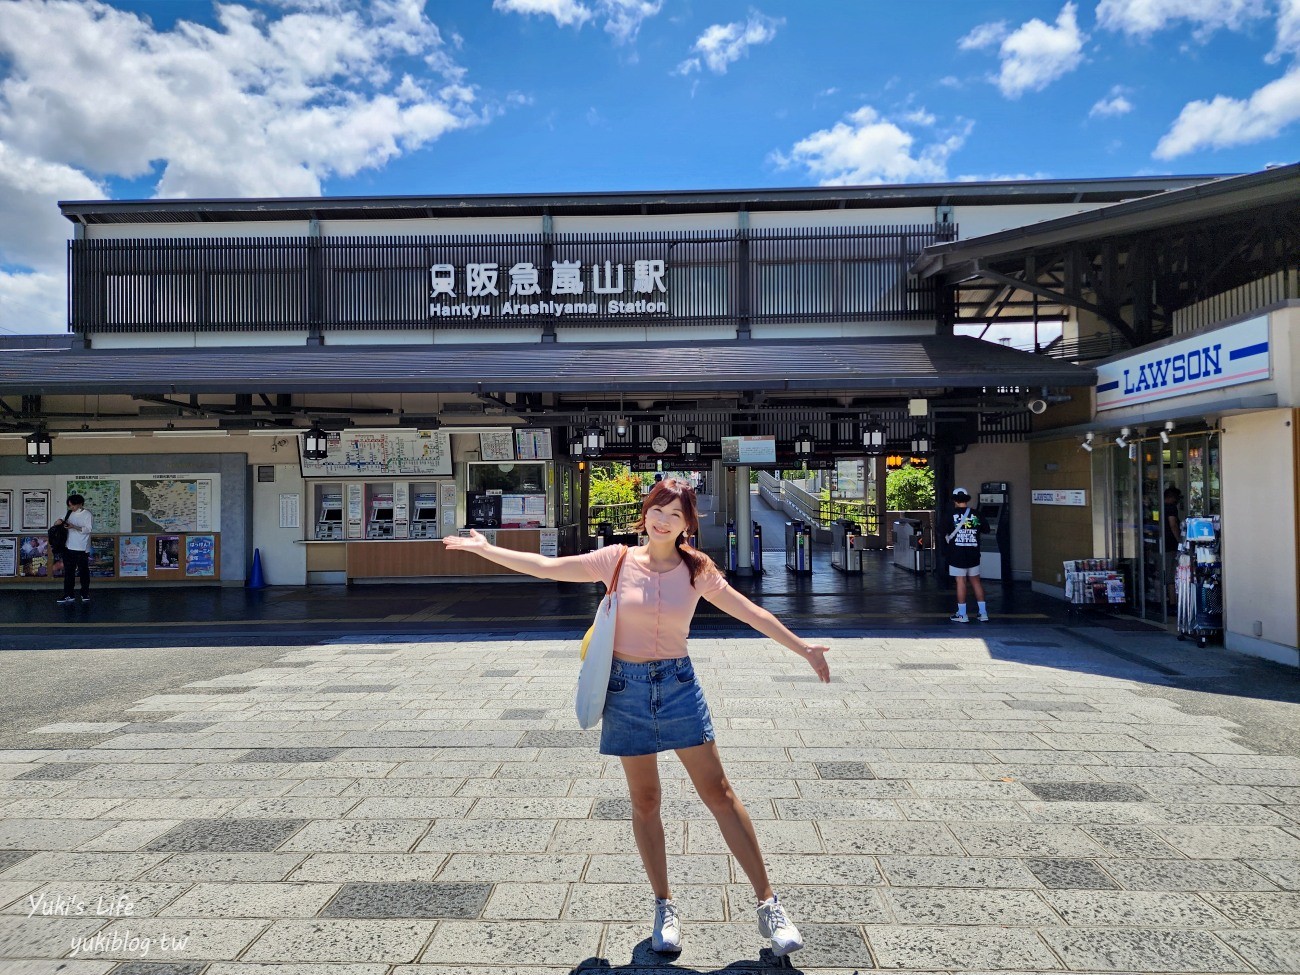 京都必遊景點》嵐山商店街，悠閒一日遊~必吃美食鯛魚燒.米菲兔麵包店 - yukiblog.tw